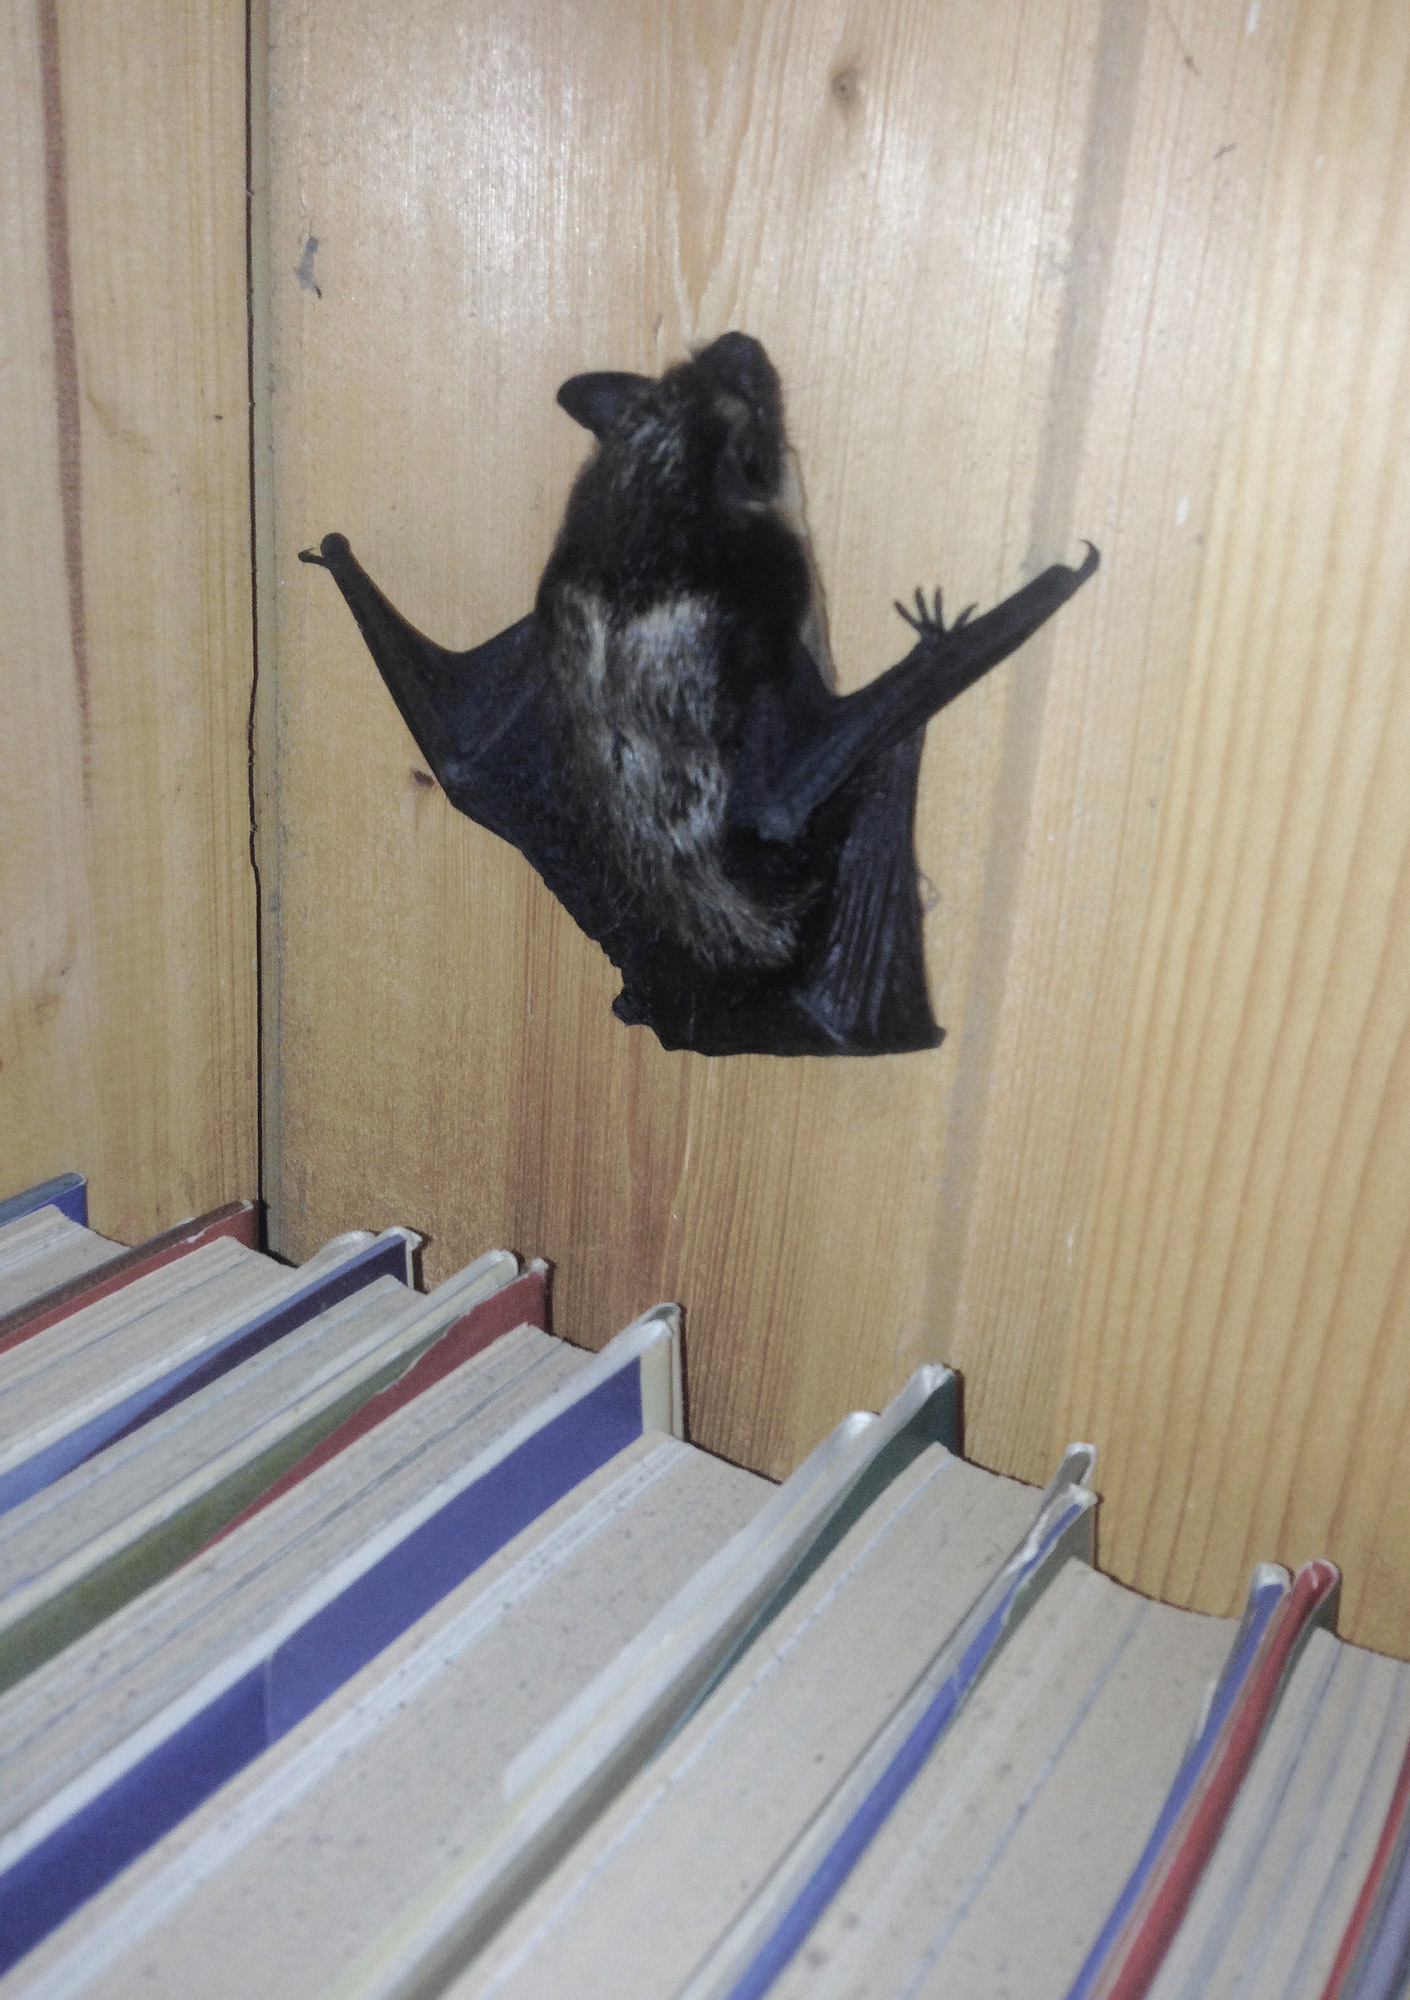  Эта летучая мышь решила спрятаться на книжной полке